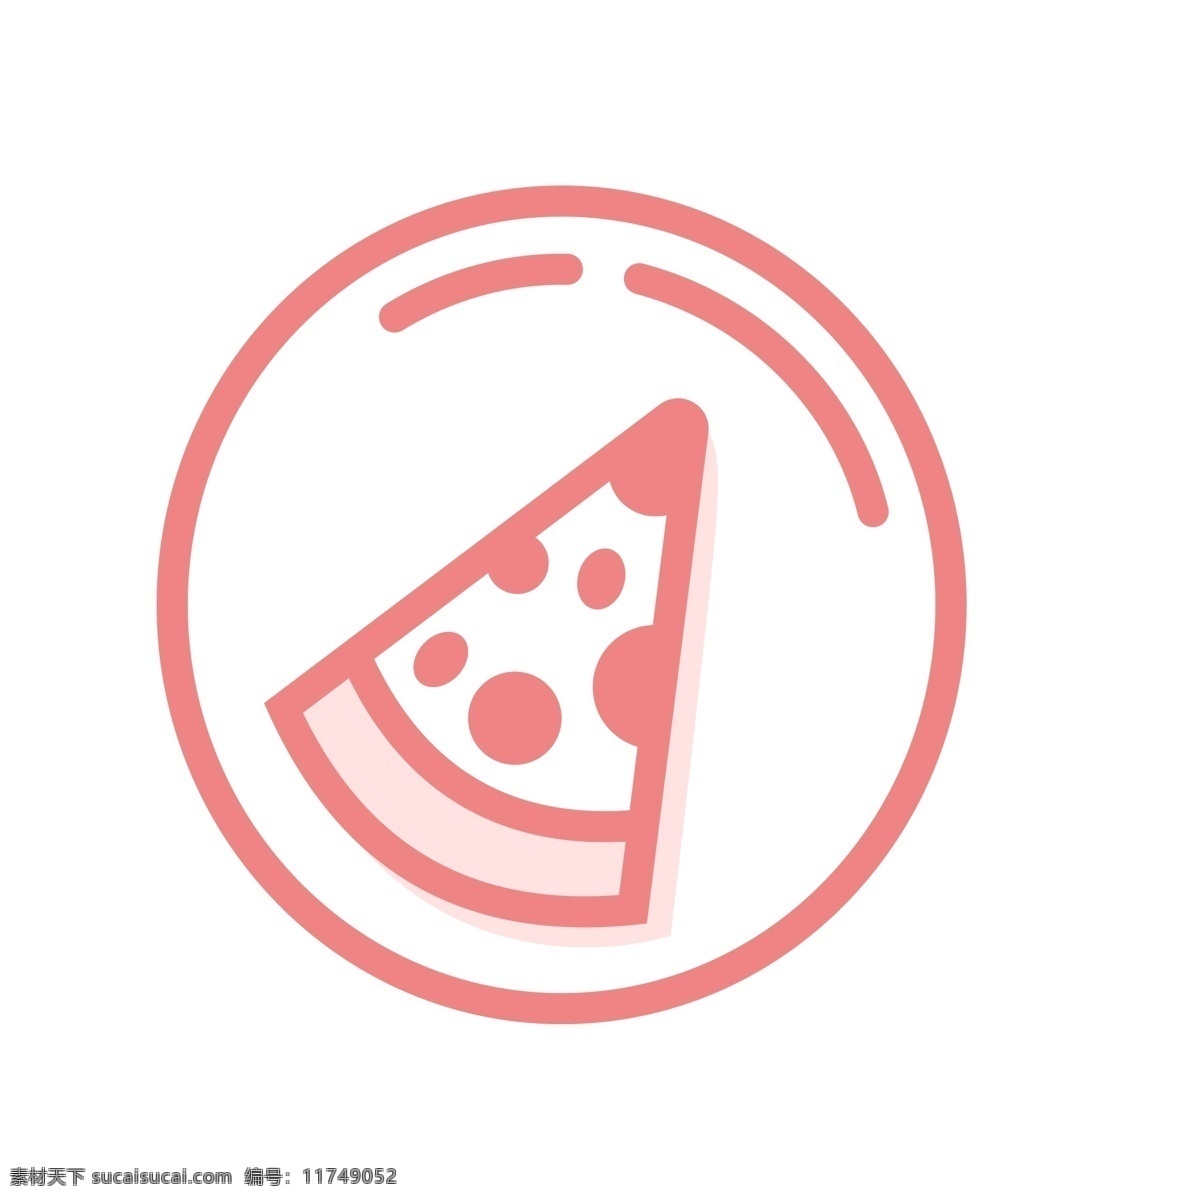 扁平化披萨 西餐 披萨 扁平化ui ui图标 手机图标 界面ui 网页ui h5图标